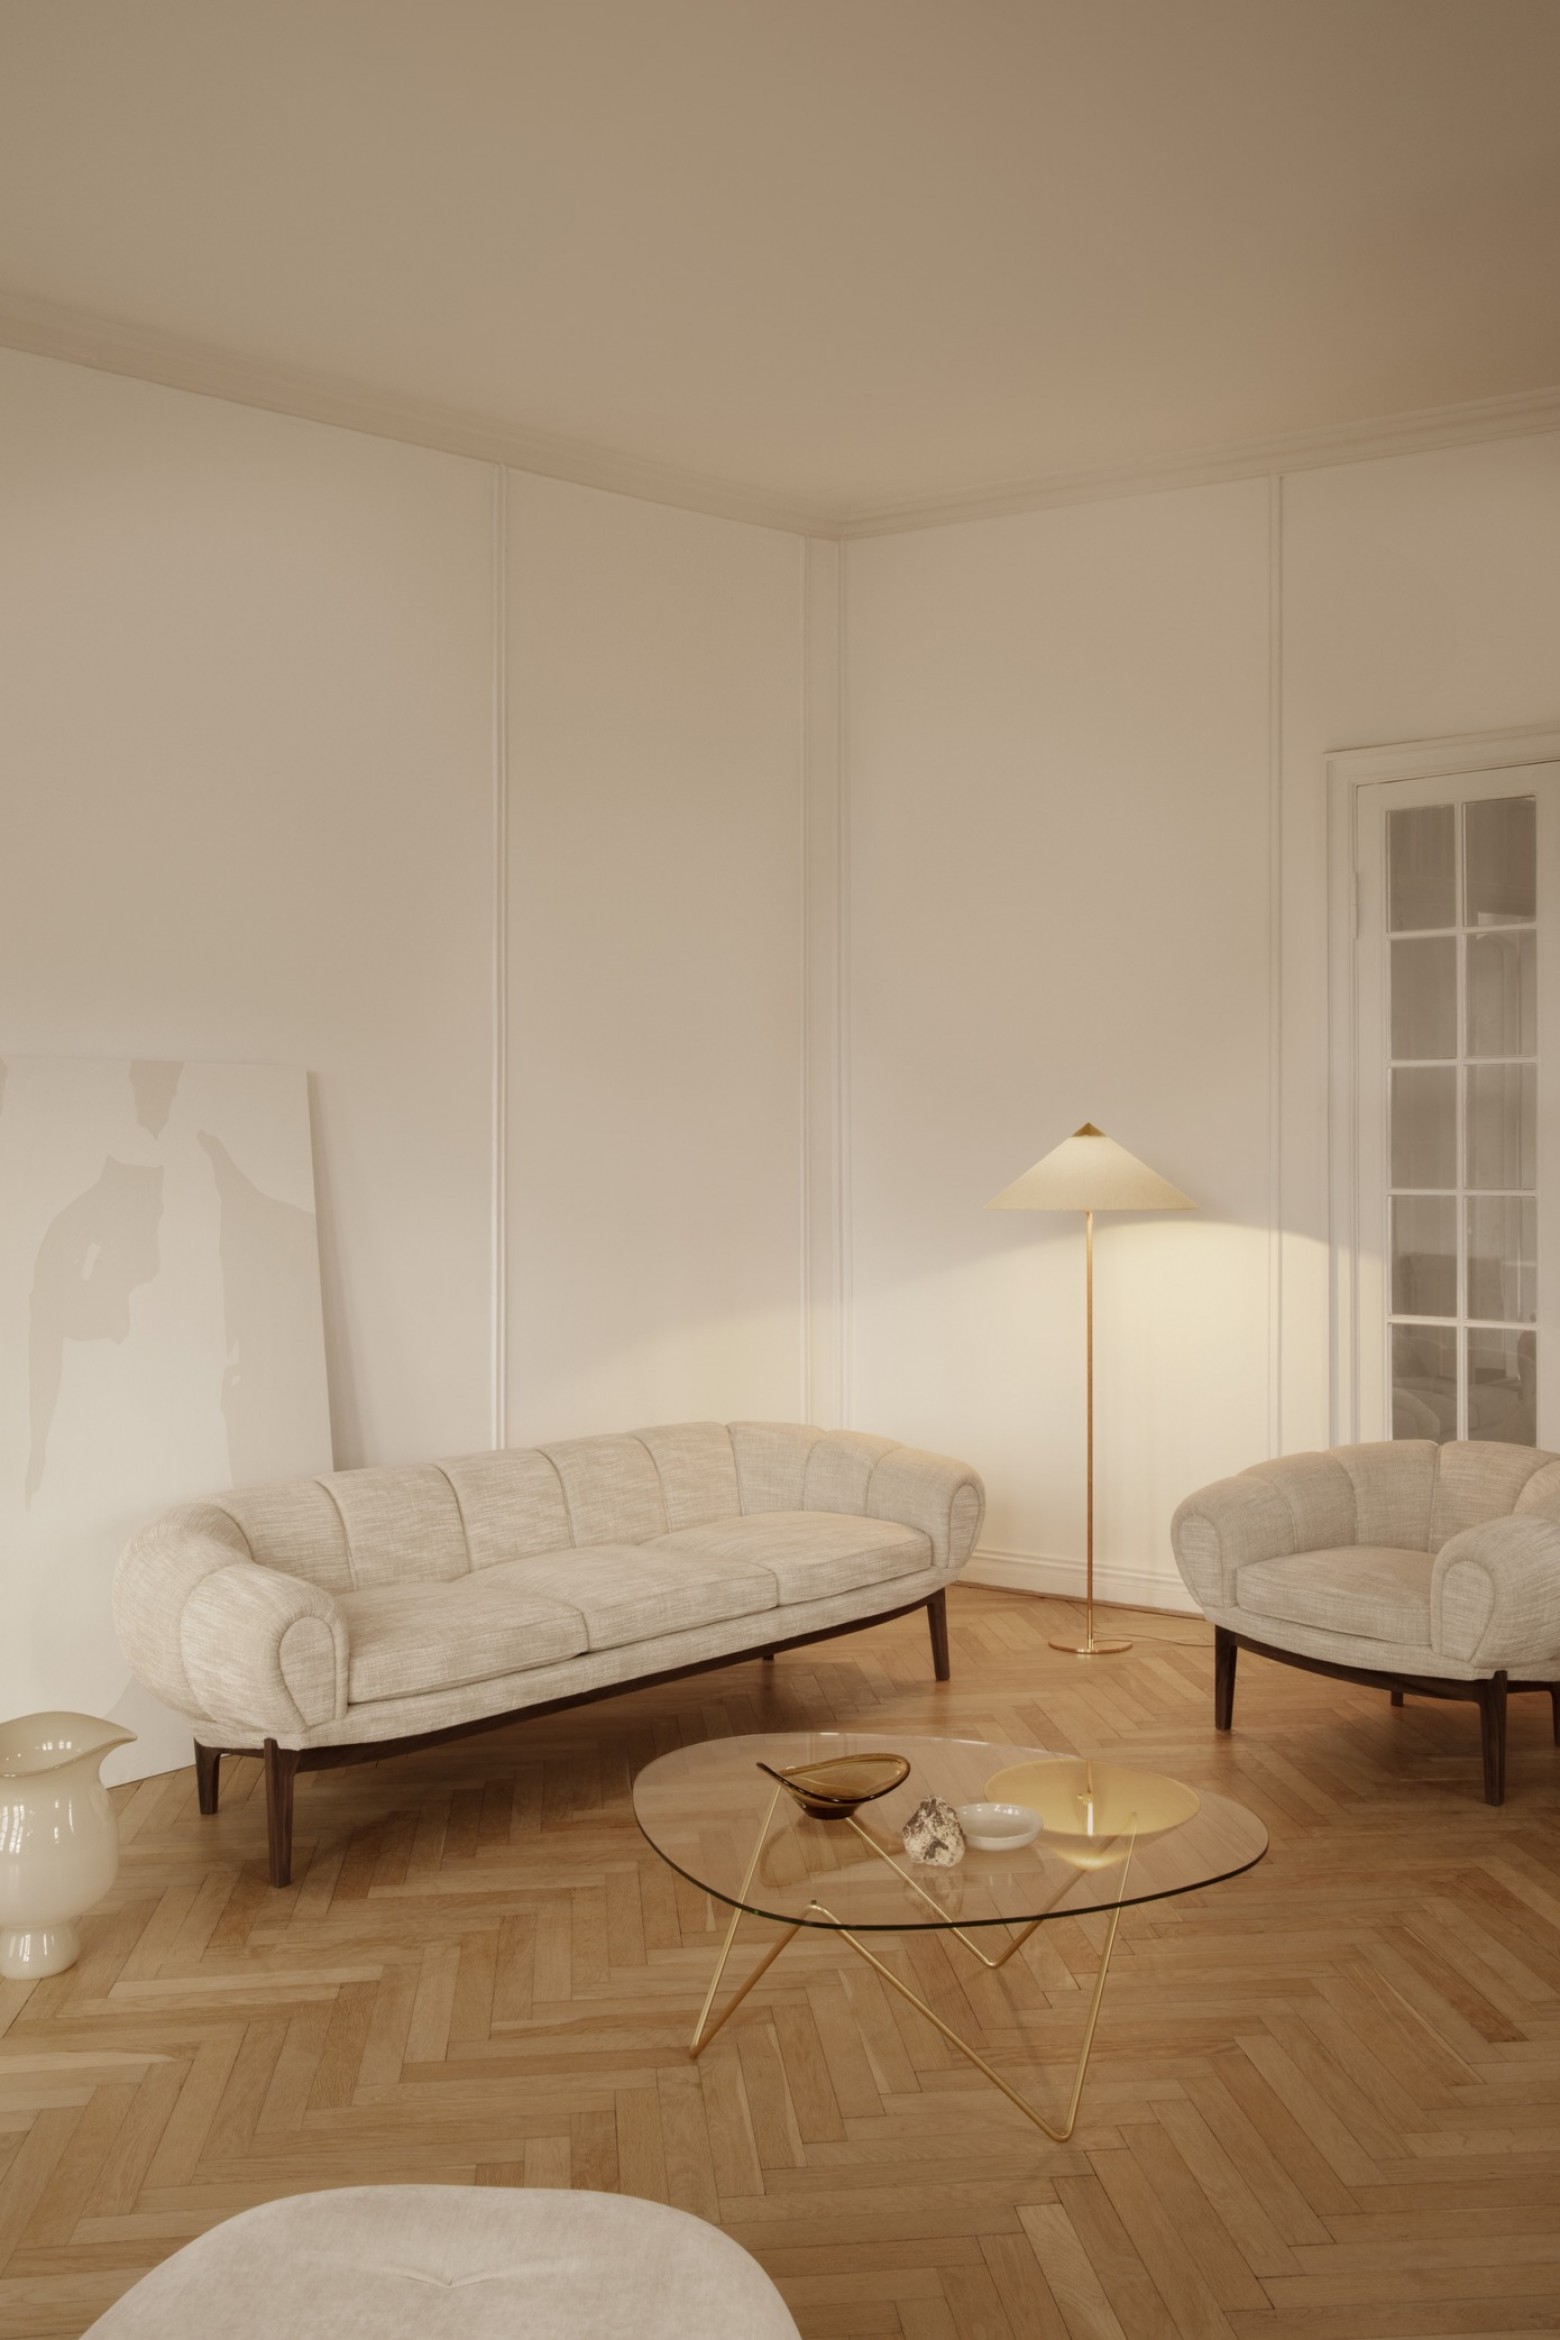  Canapé Croissant et chaise lounge avec table basse Pedrera Victors Design Agency